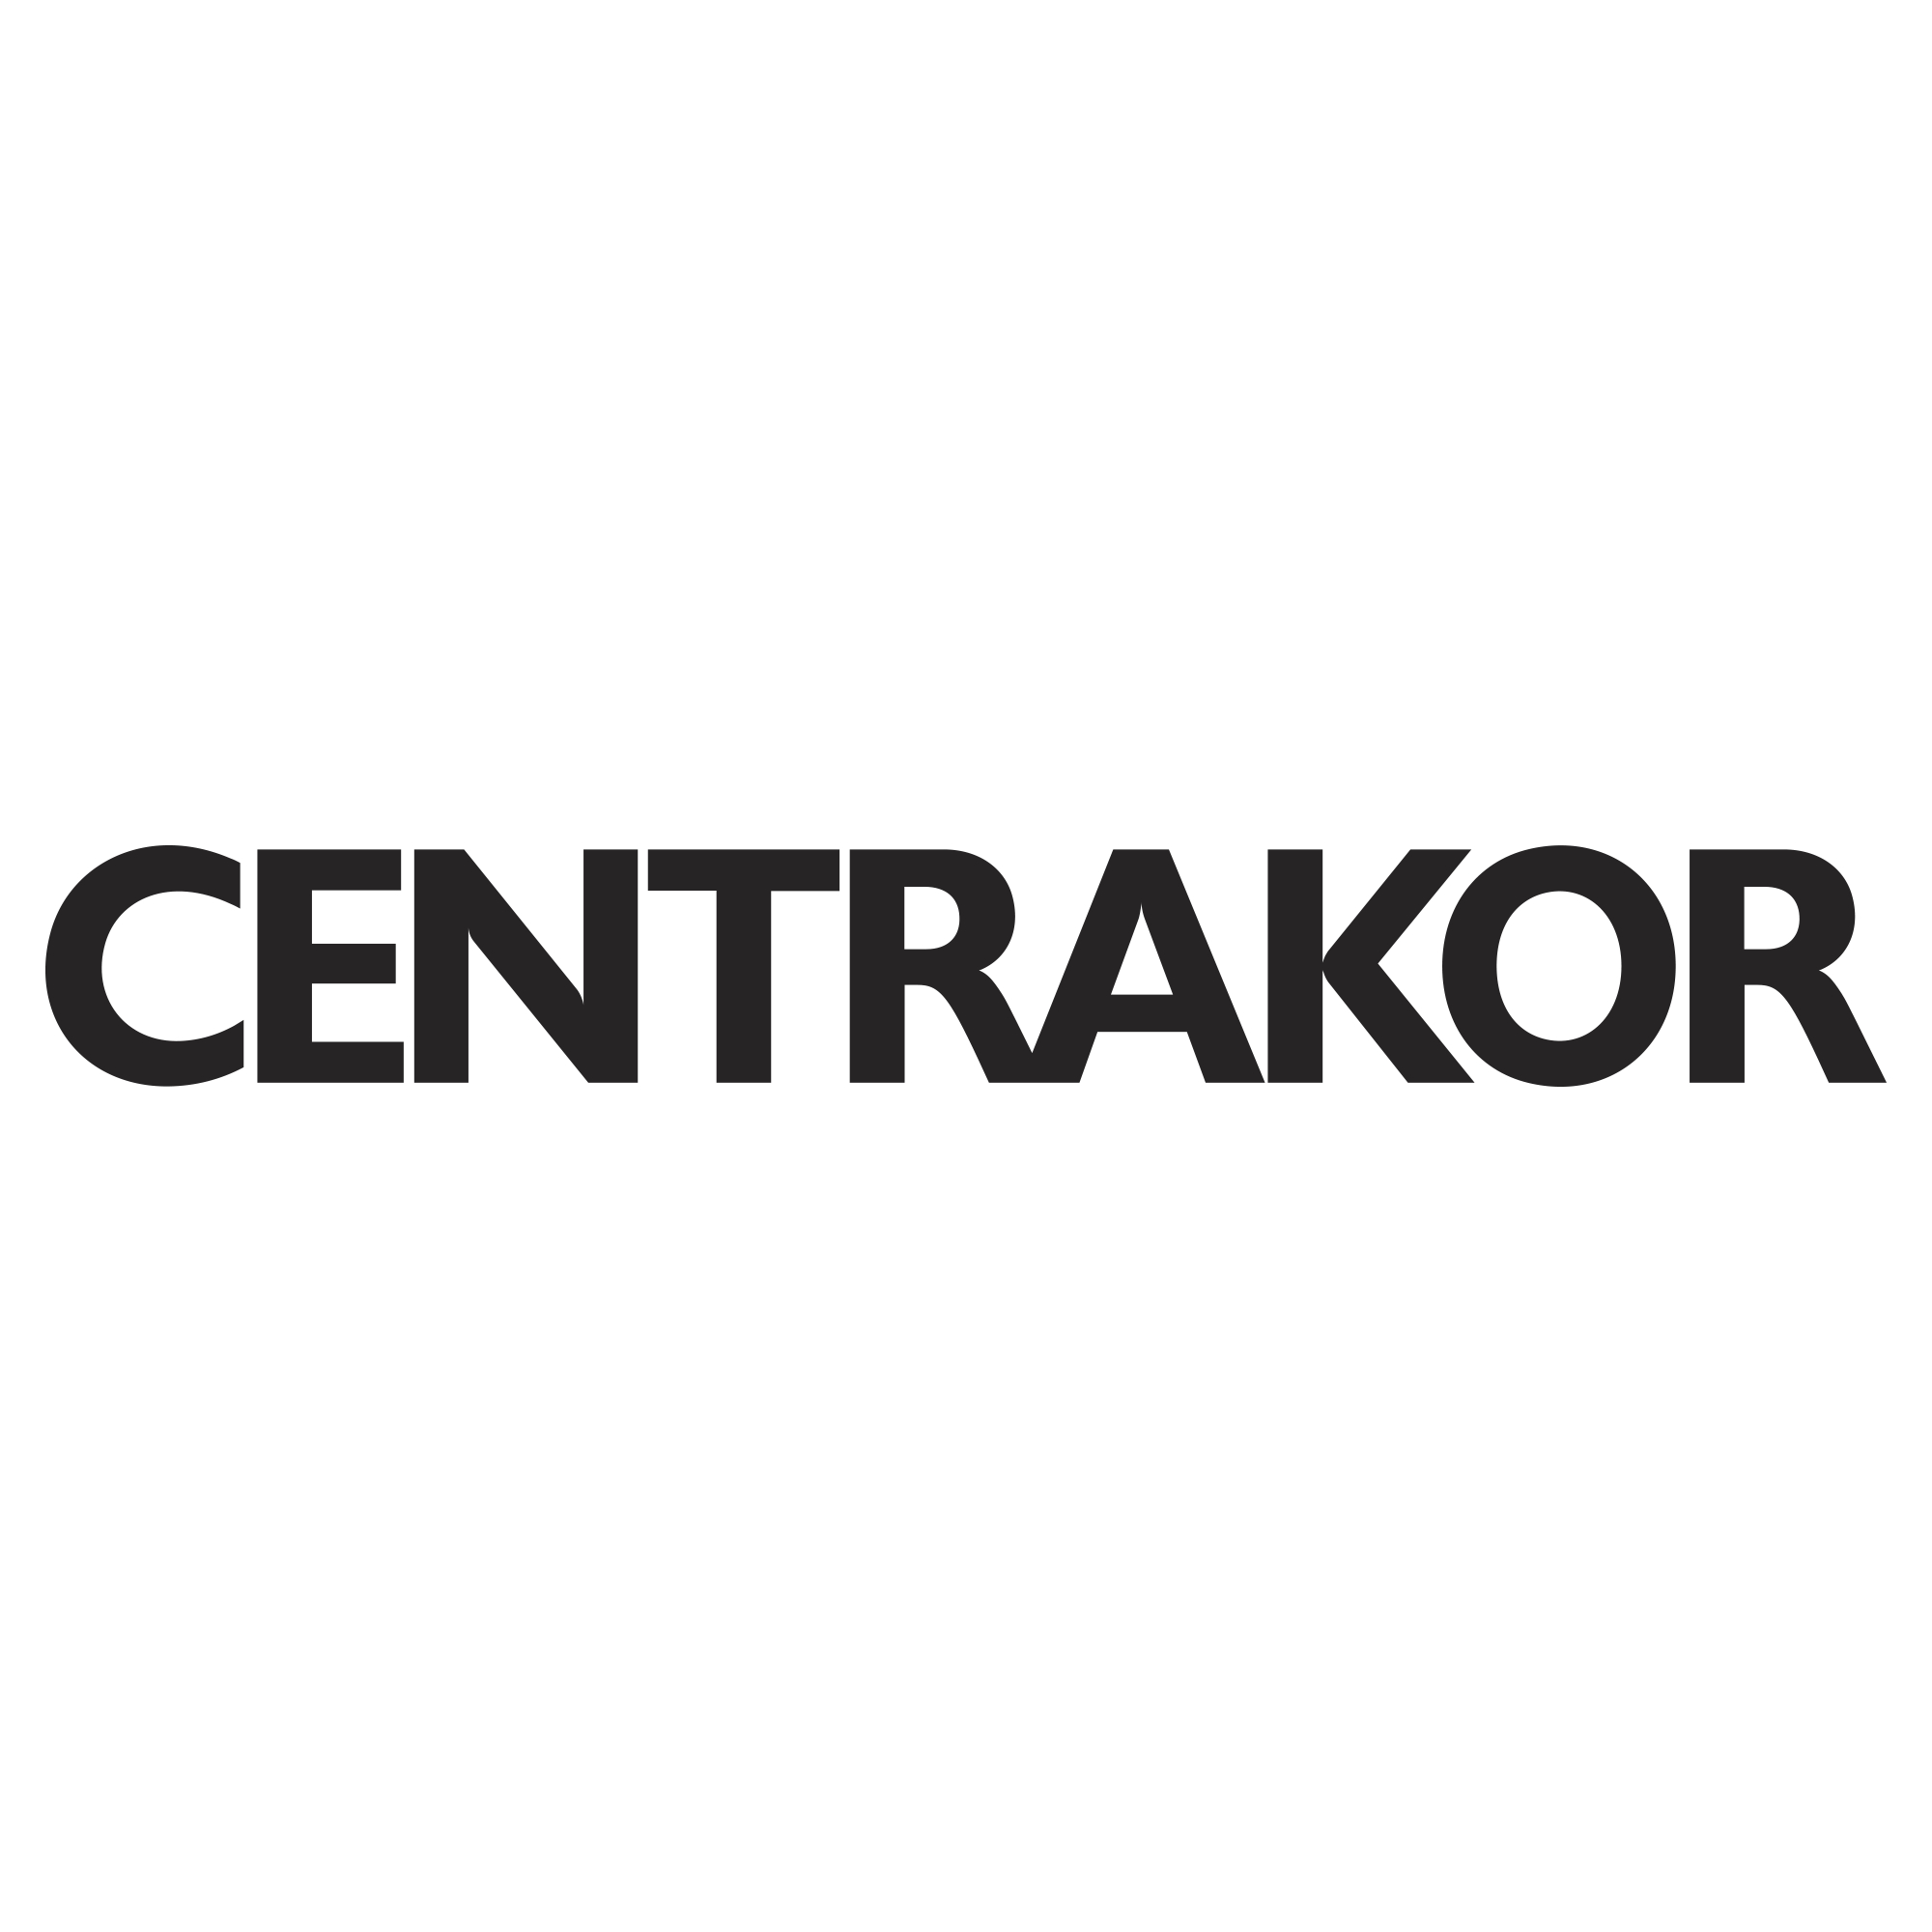 Bons Plans Centrakor Deals Pour Janvier 2020 Dealabscom